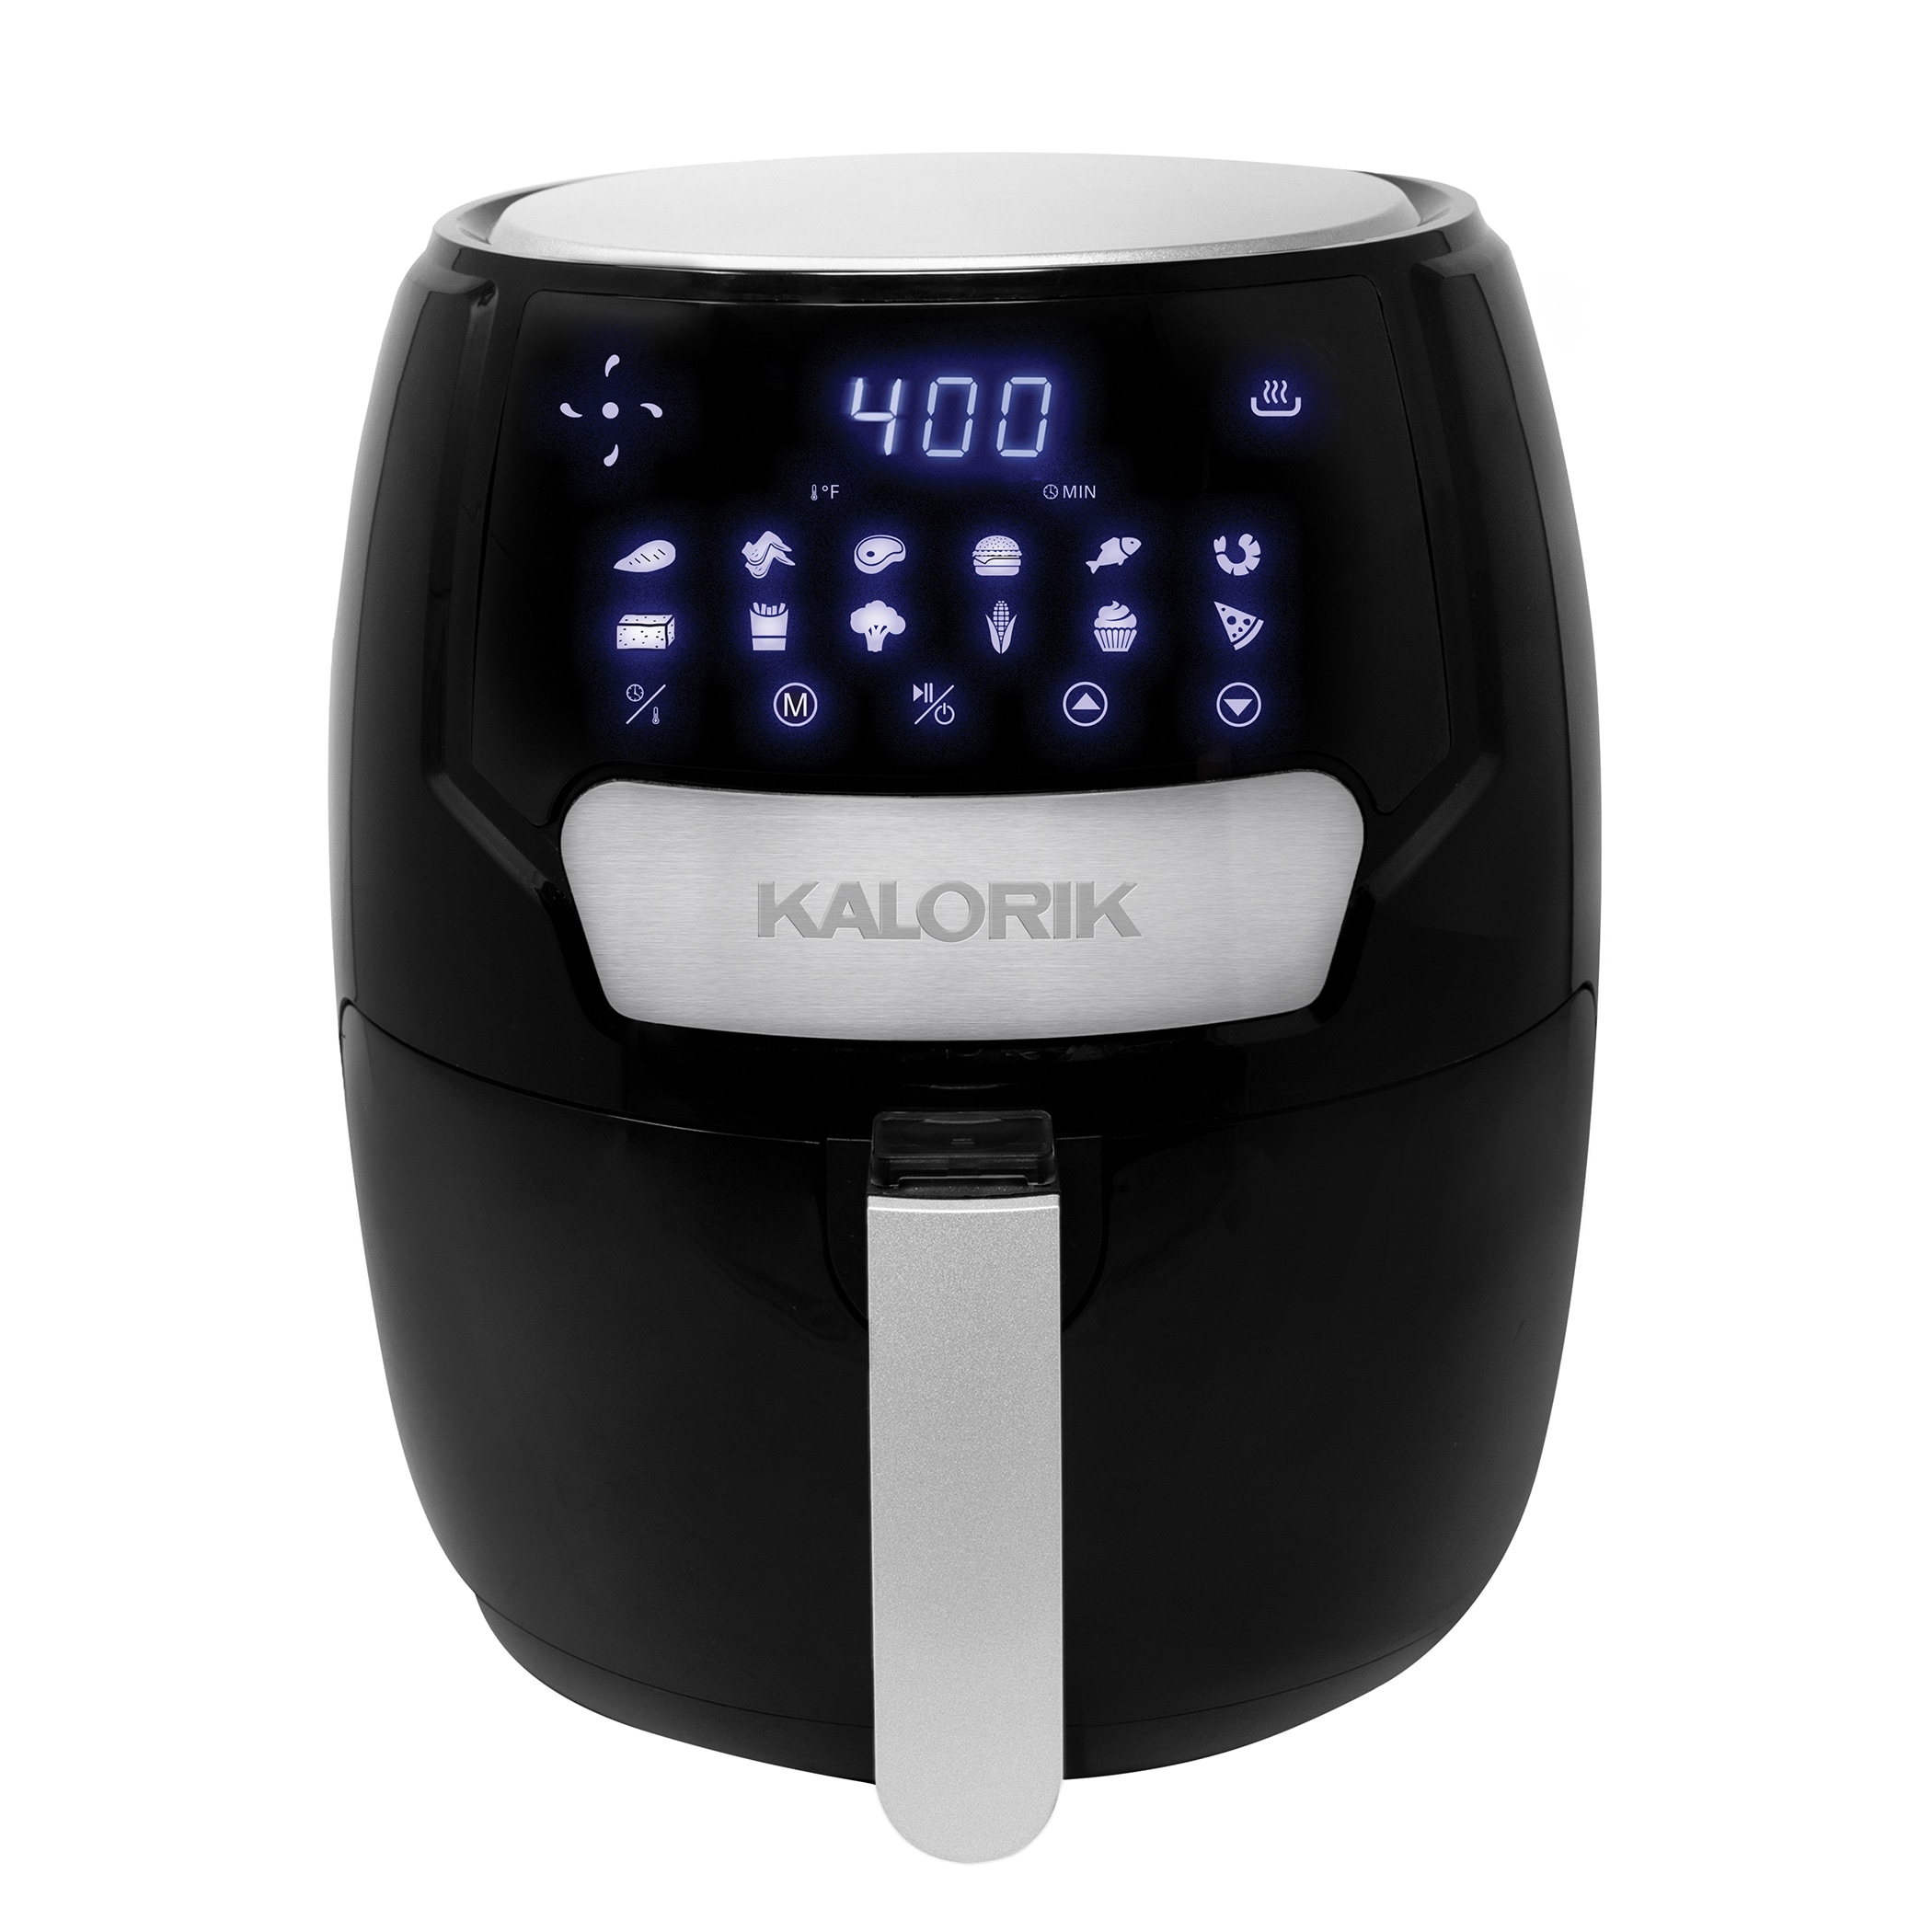 Kalorik 4.5-Quart Black Air Fryer - Digital Control, 13 Presets